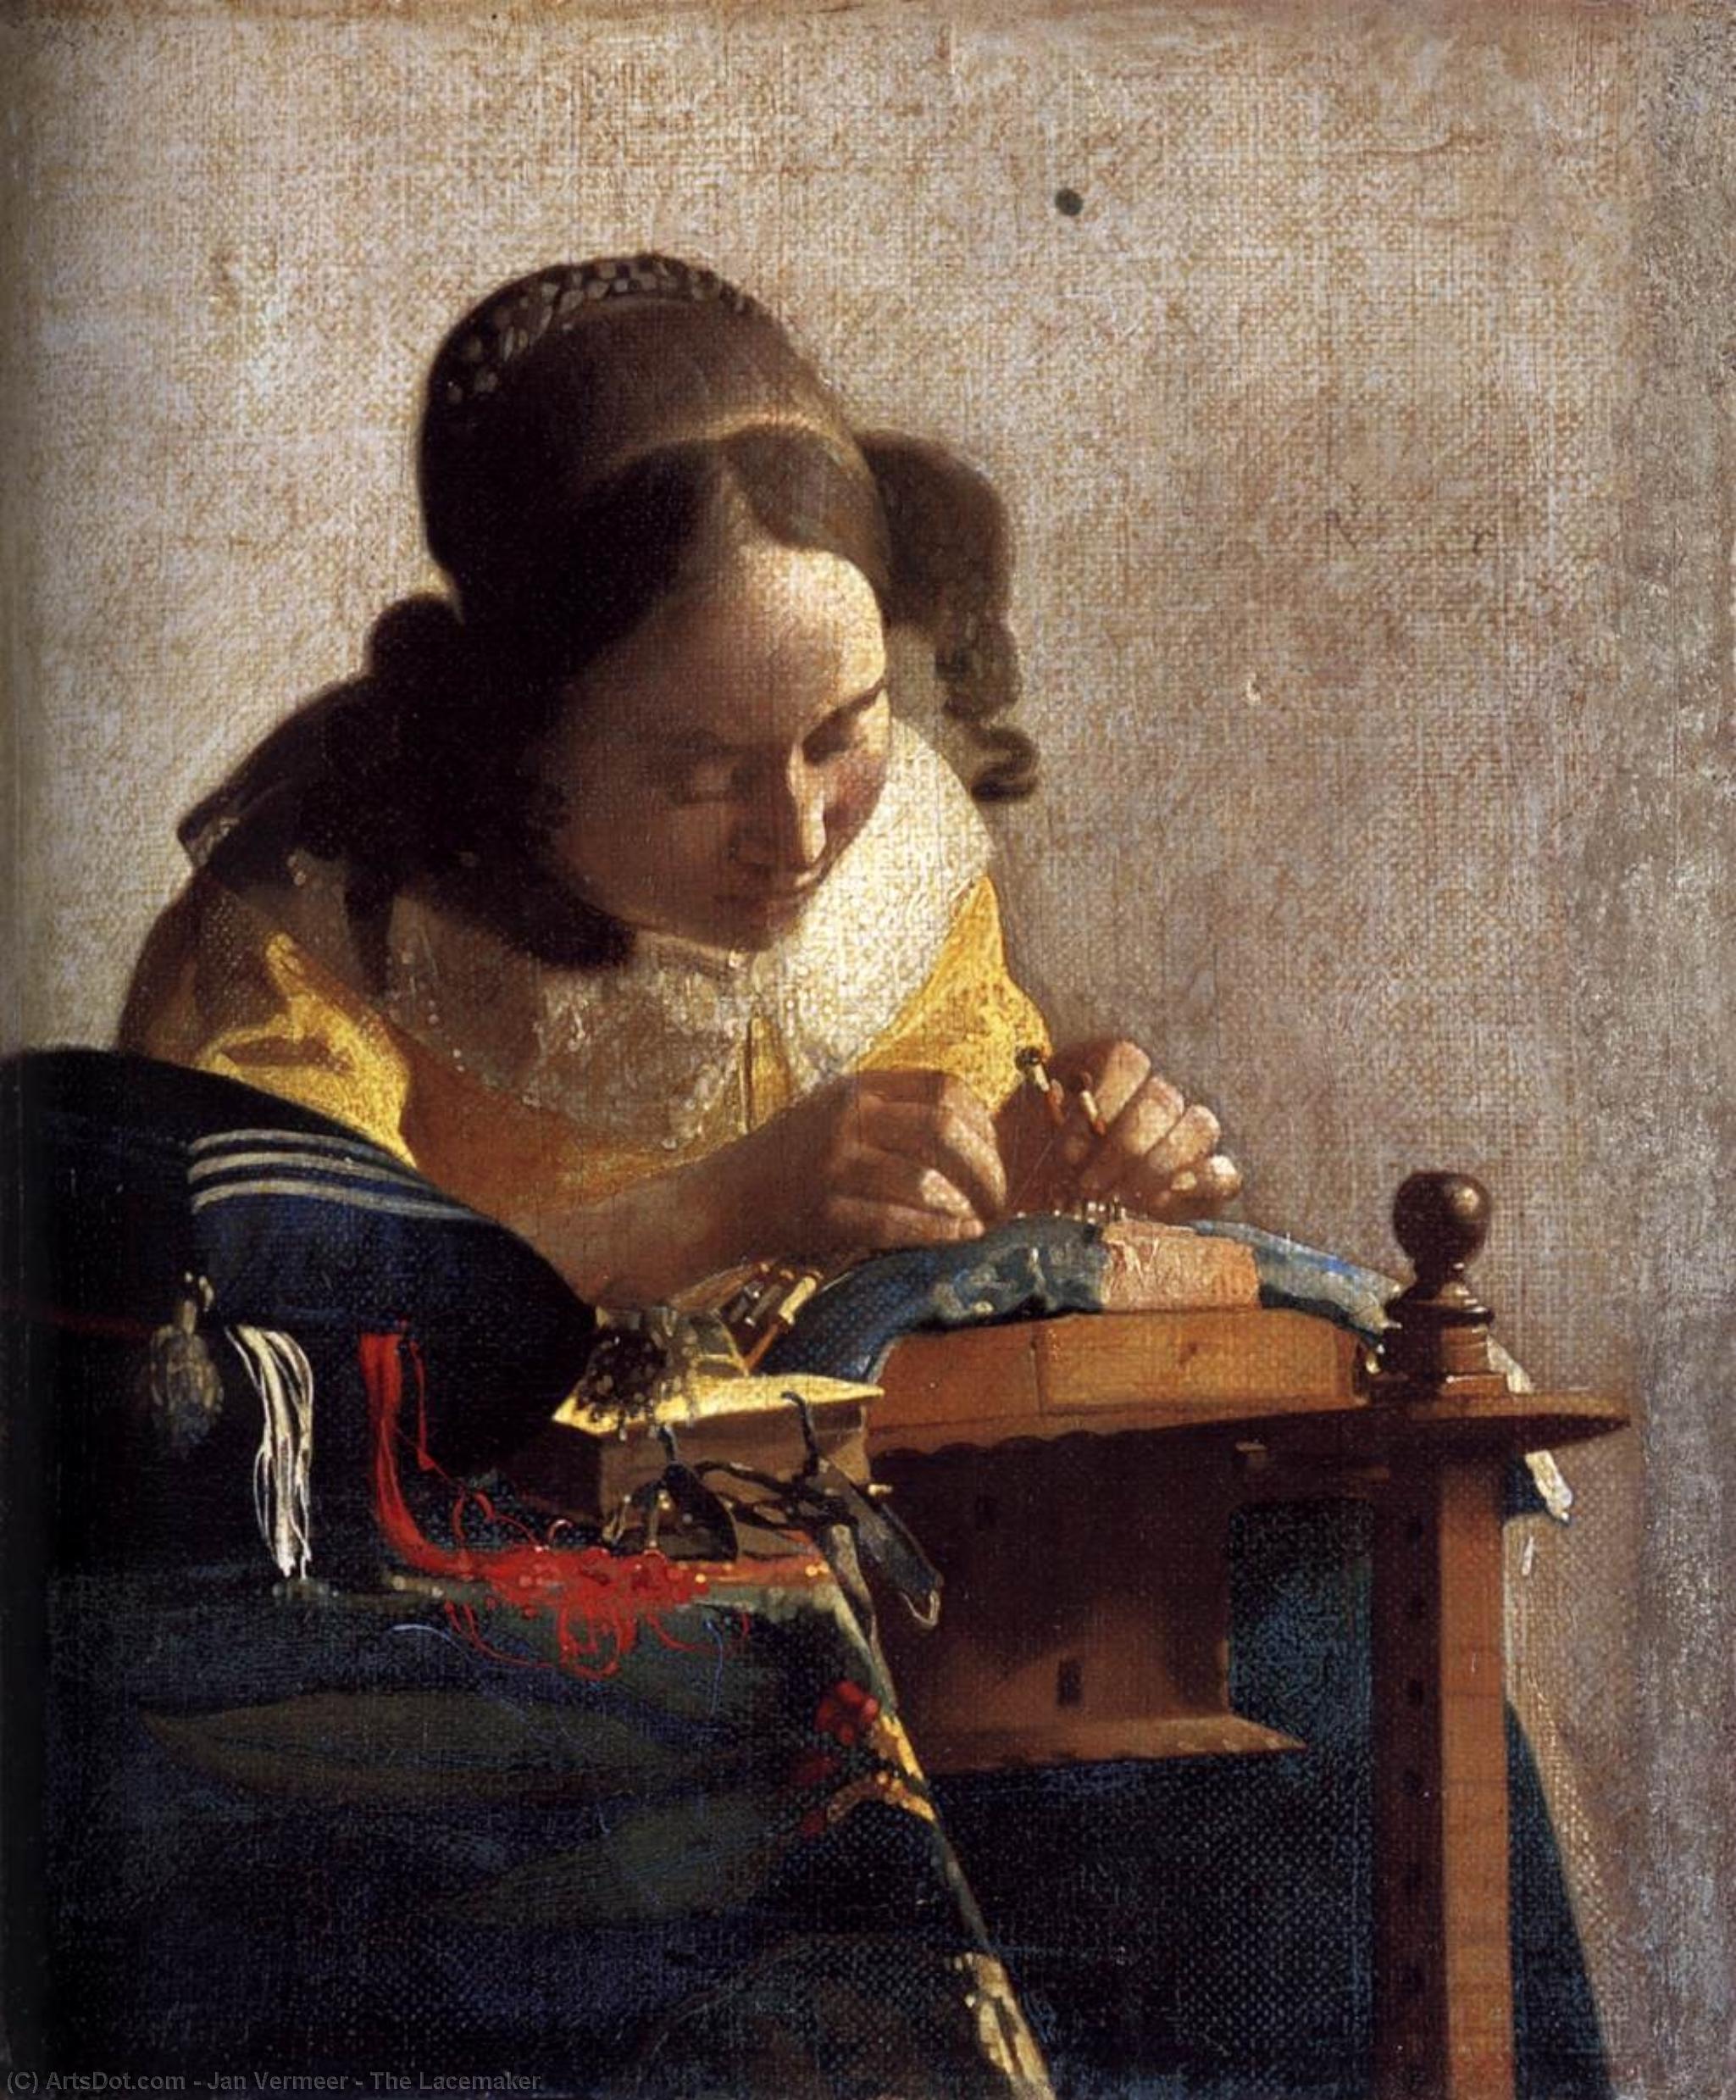 La Encajera de Vermeer imprimir en papel fotográfico calidad Elegir Talla 230gsm